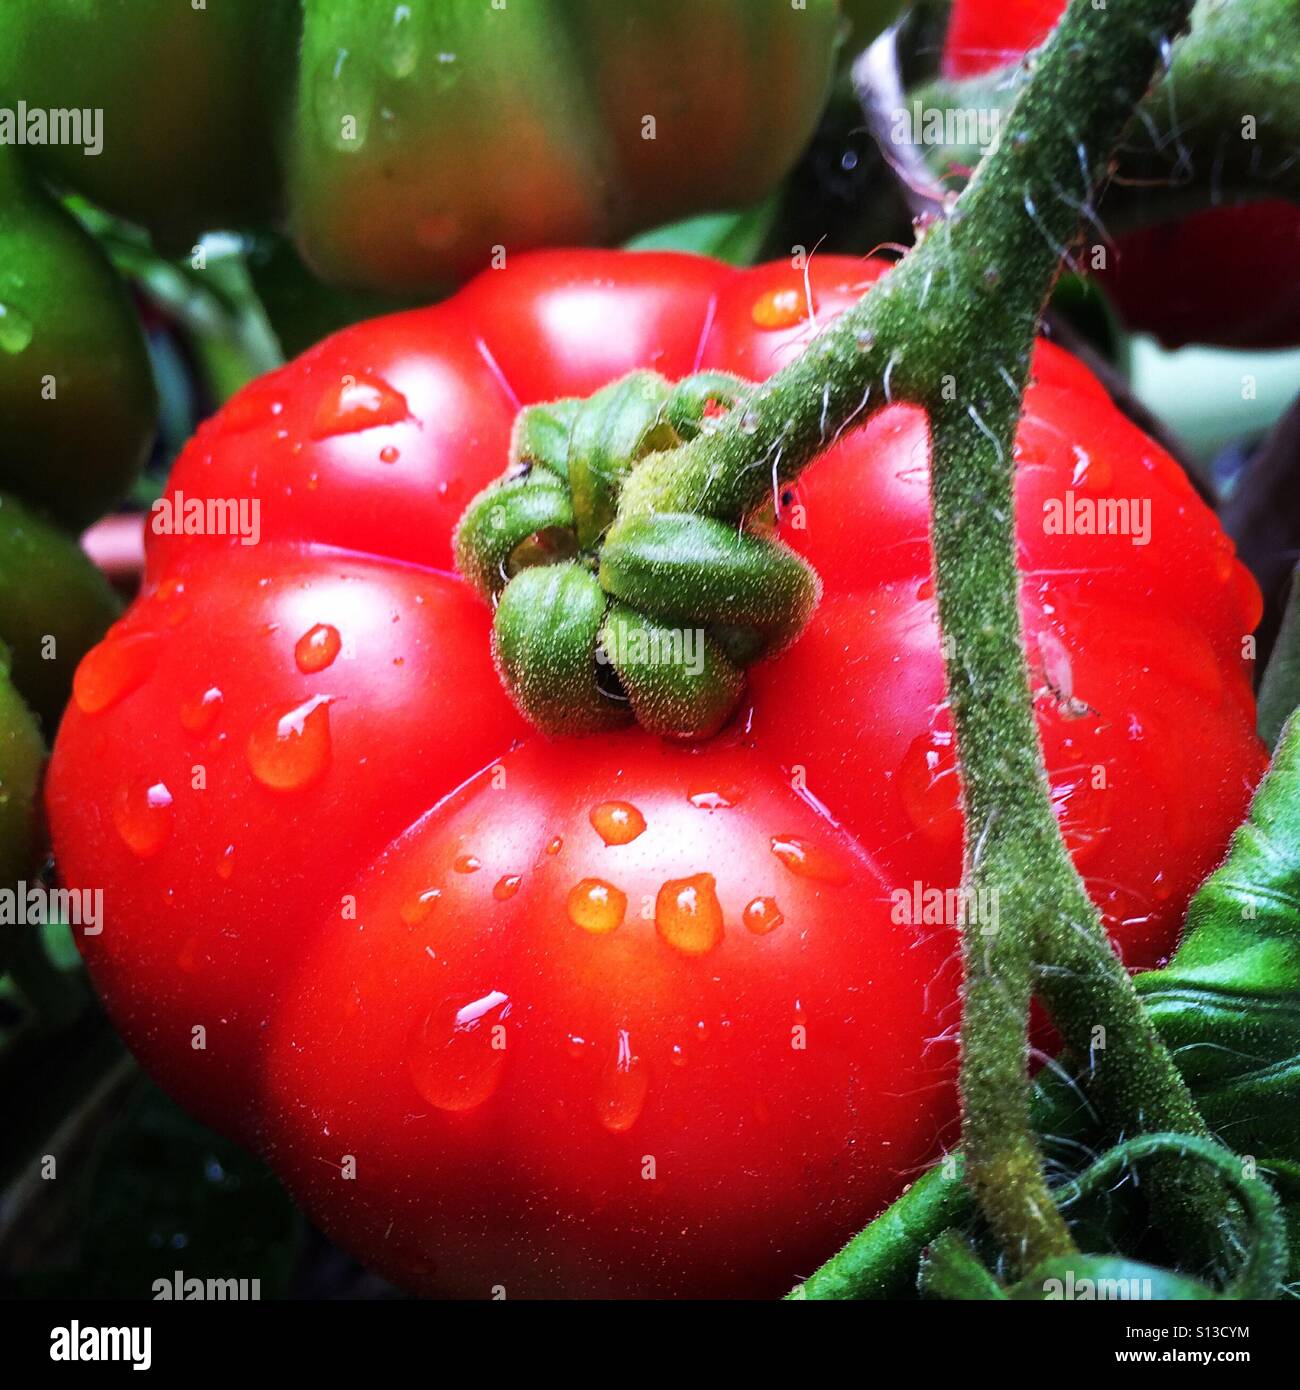 Home grown tomato Stock Photo